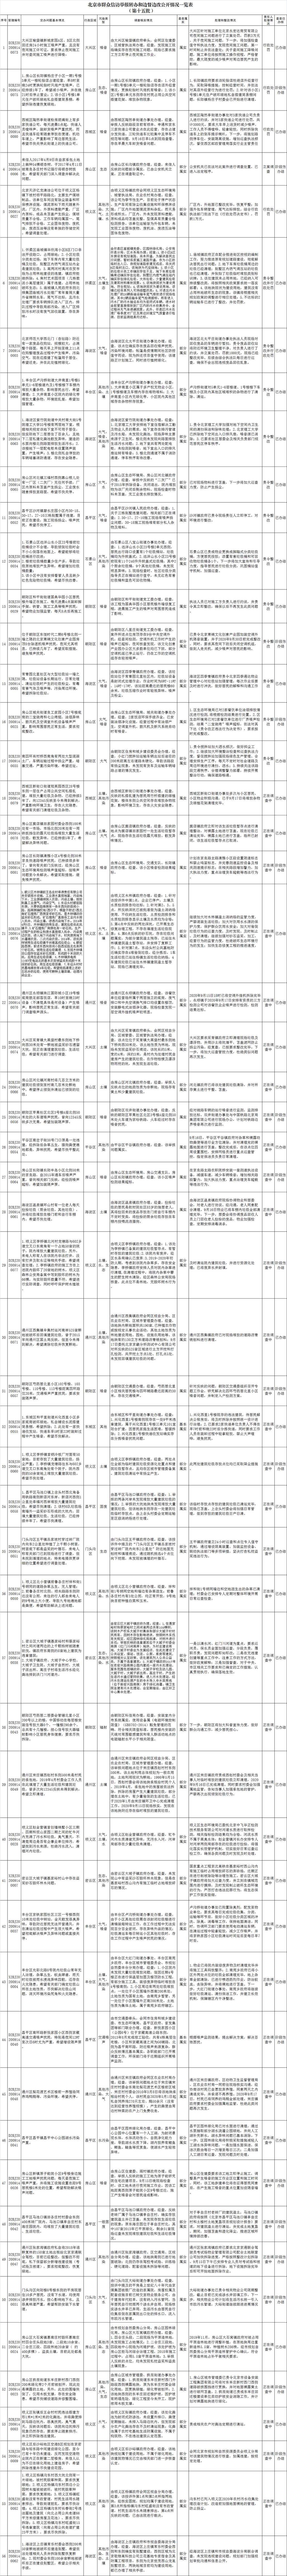 北京市群众信访举报转办和边督边改公开情况一览表(第十五批)